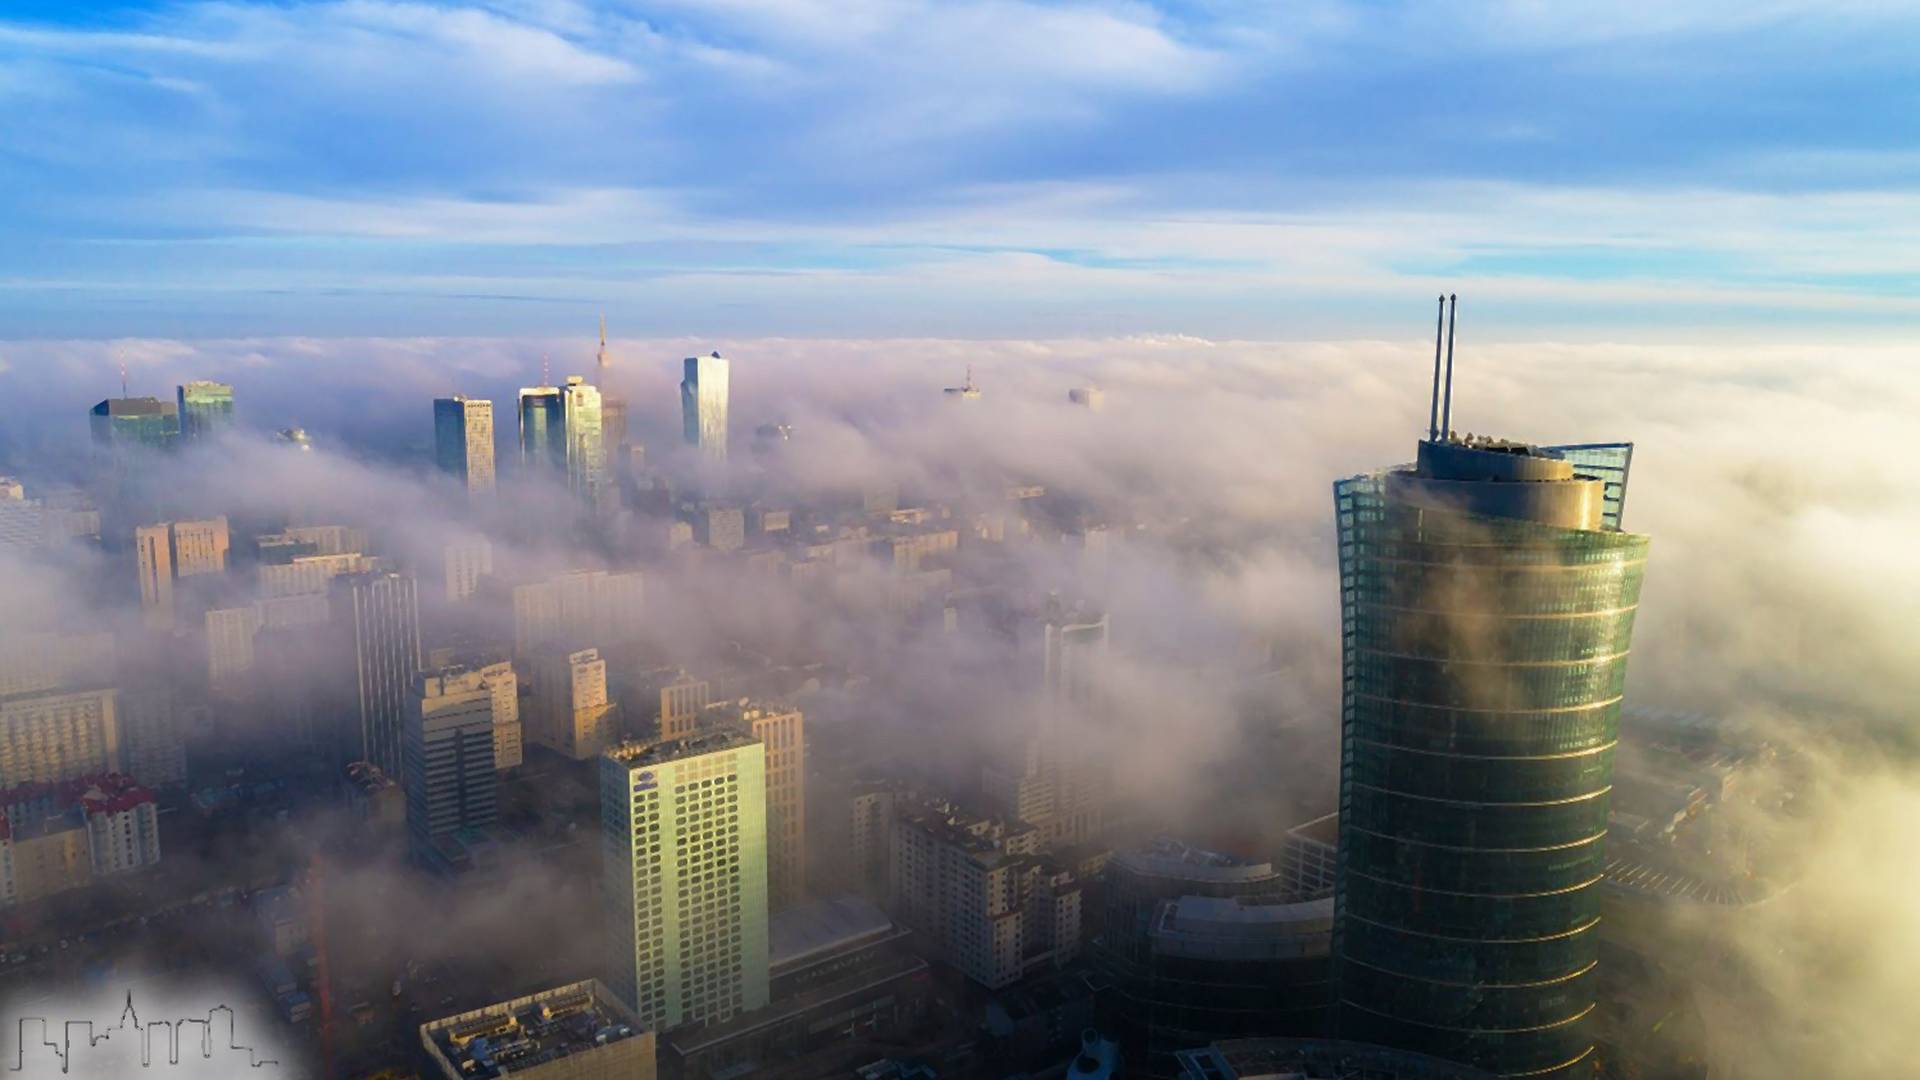 "Chmury dosłownie pływały między wieżowcami". Zachwycające zdjęcie z Warszawy